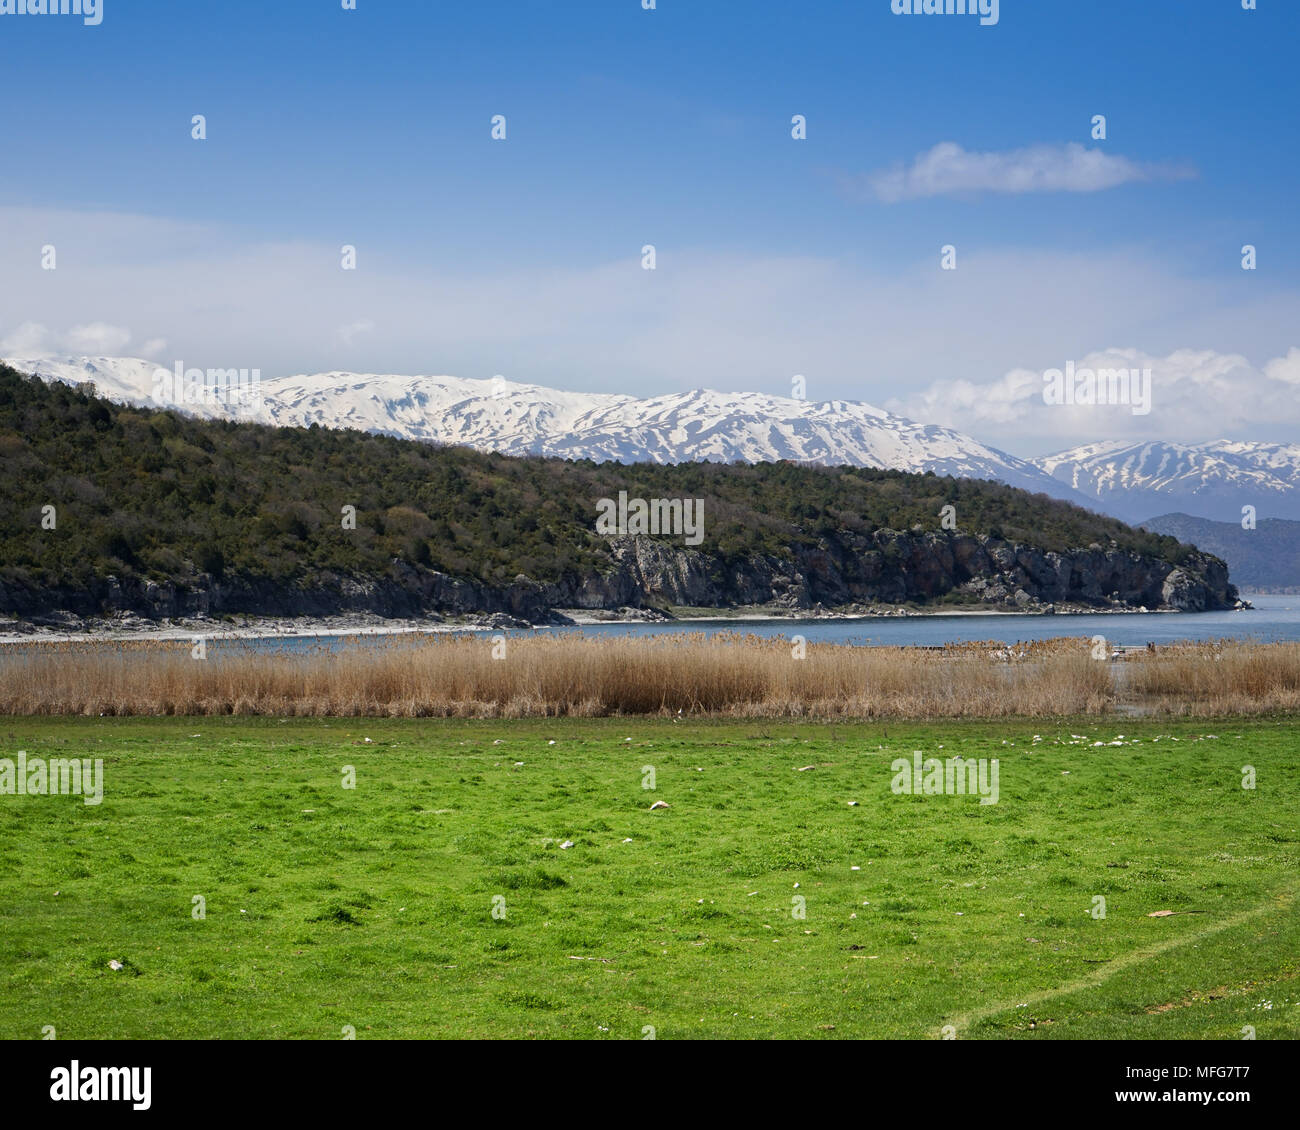 Foto in großen Prespa See im Norden Griechenlands. Der See ist Teil Griechenlands, Albaniens und der EHEMALIGEN JUGOSLAWISCHEN REPUBLIK MAZEDONIEN Gebiet. Stockfoto